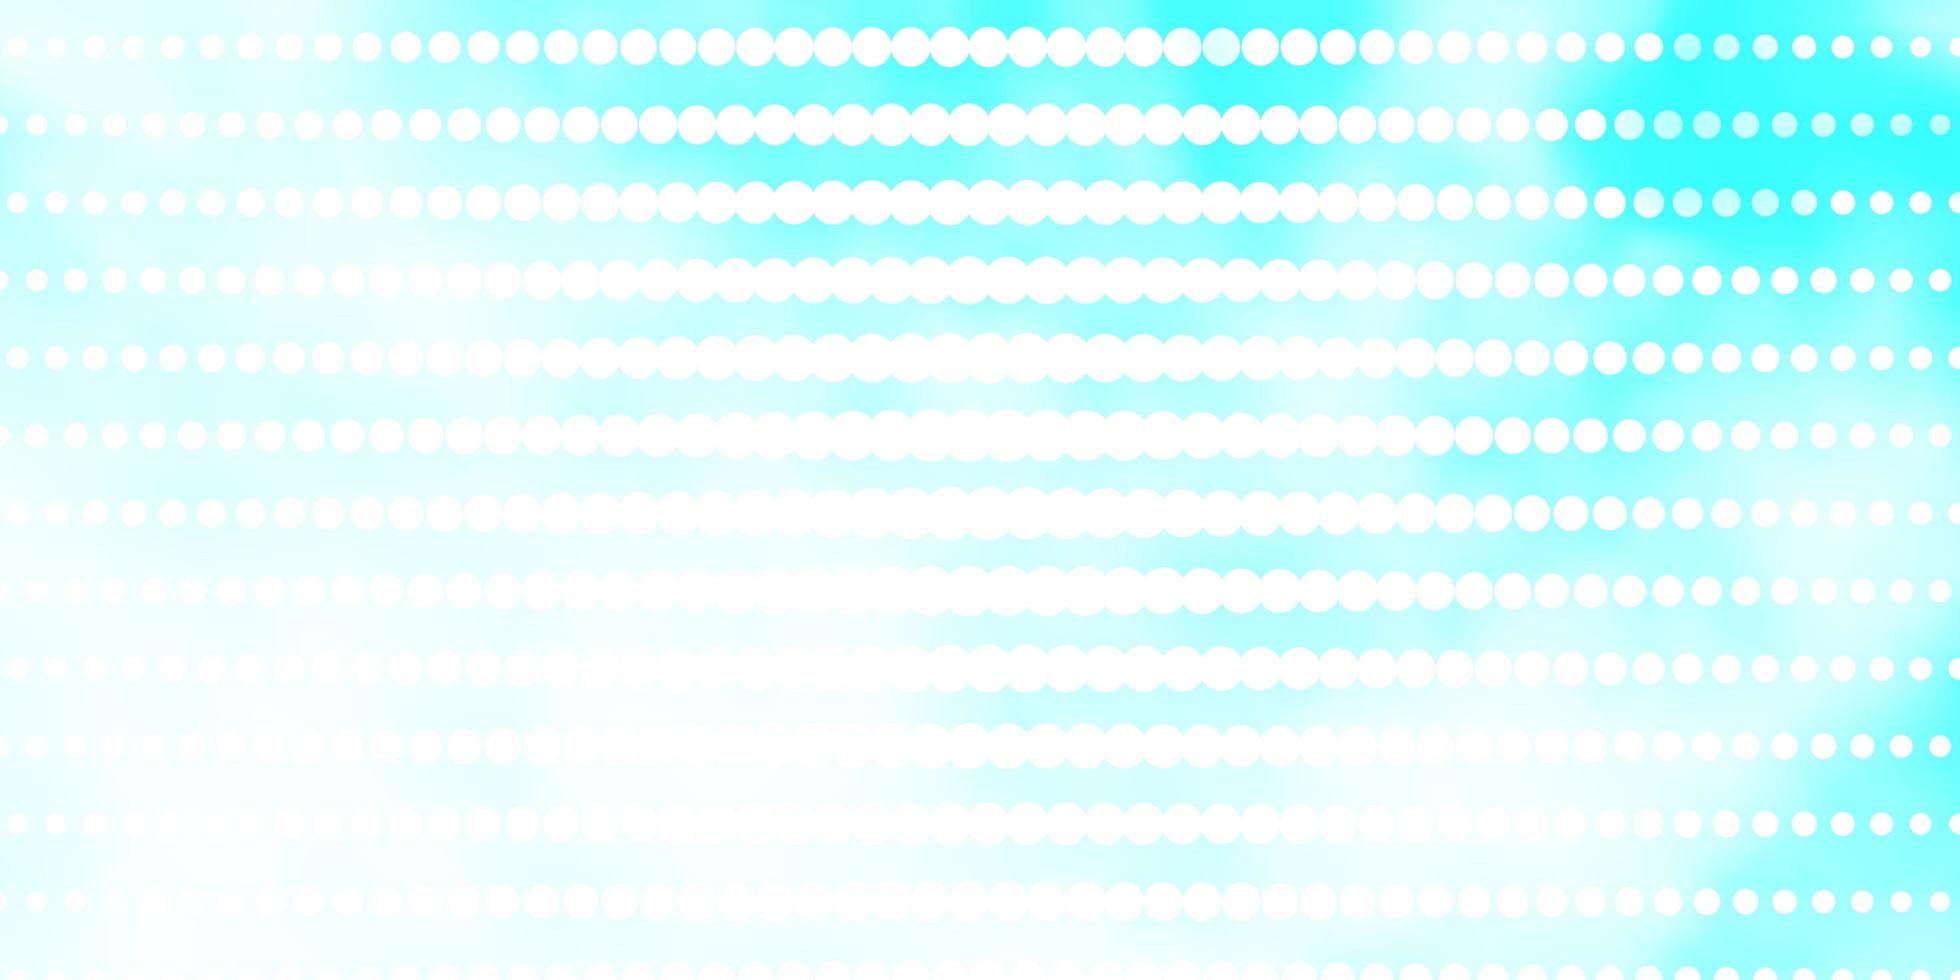 textura vector azul claro com círculos.